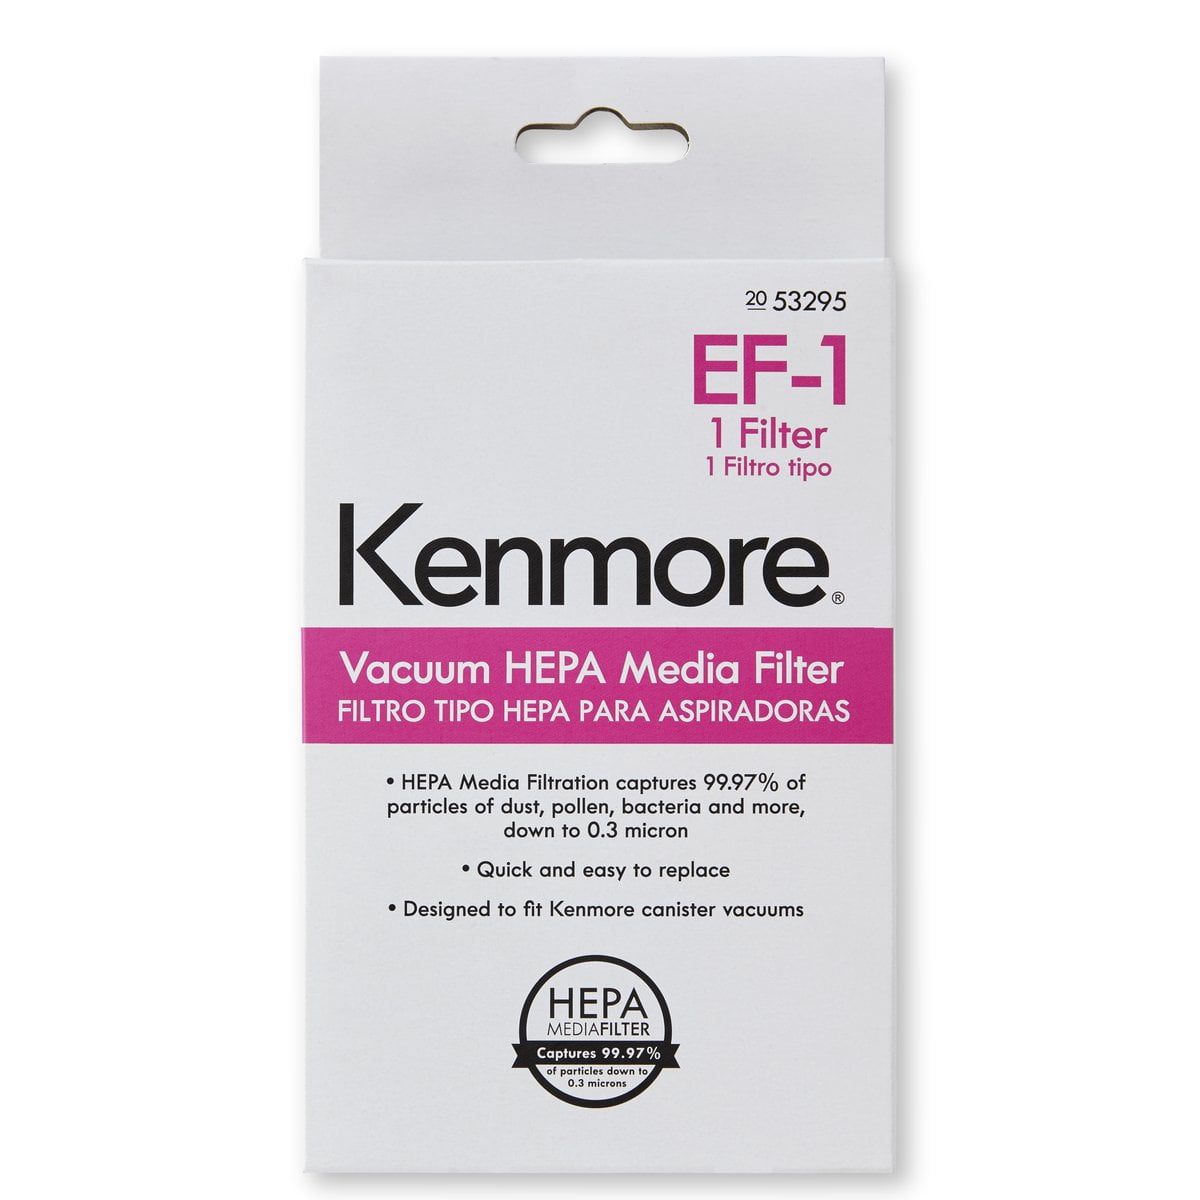 12 Kenmore U/O Allergen Bags 50688 1 Sears Kenmore EF-1 Filter 20-53295 86889 